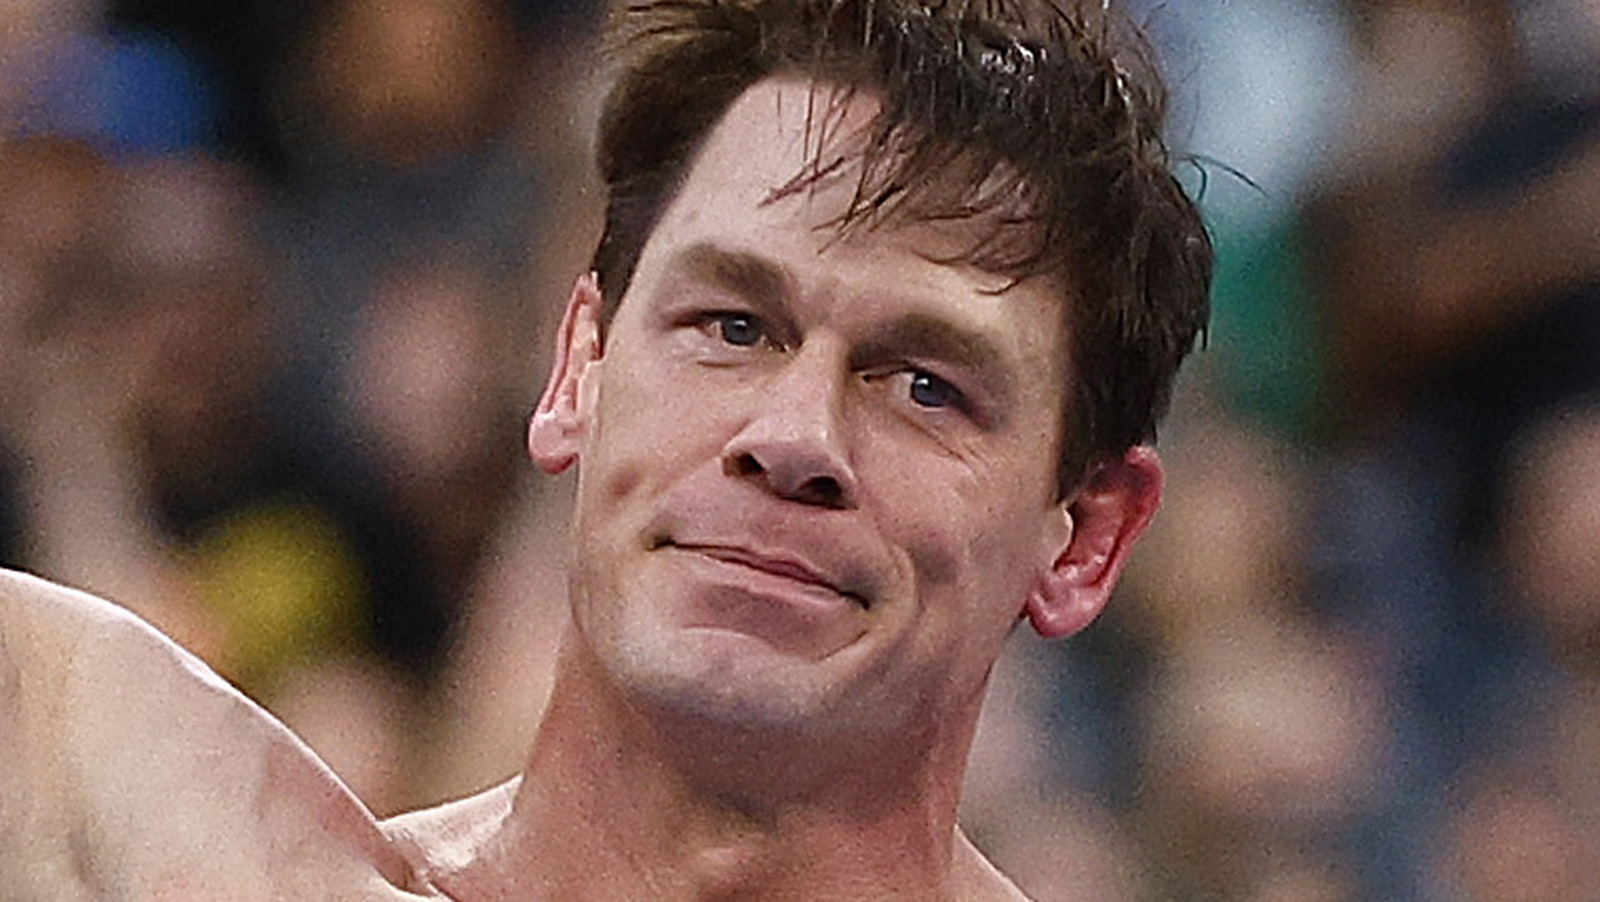 Detalles entre bastidores sobre el tiempo de ejecución de Ripley-Flair, Cena-Theory Matches en WWE WrestleMania